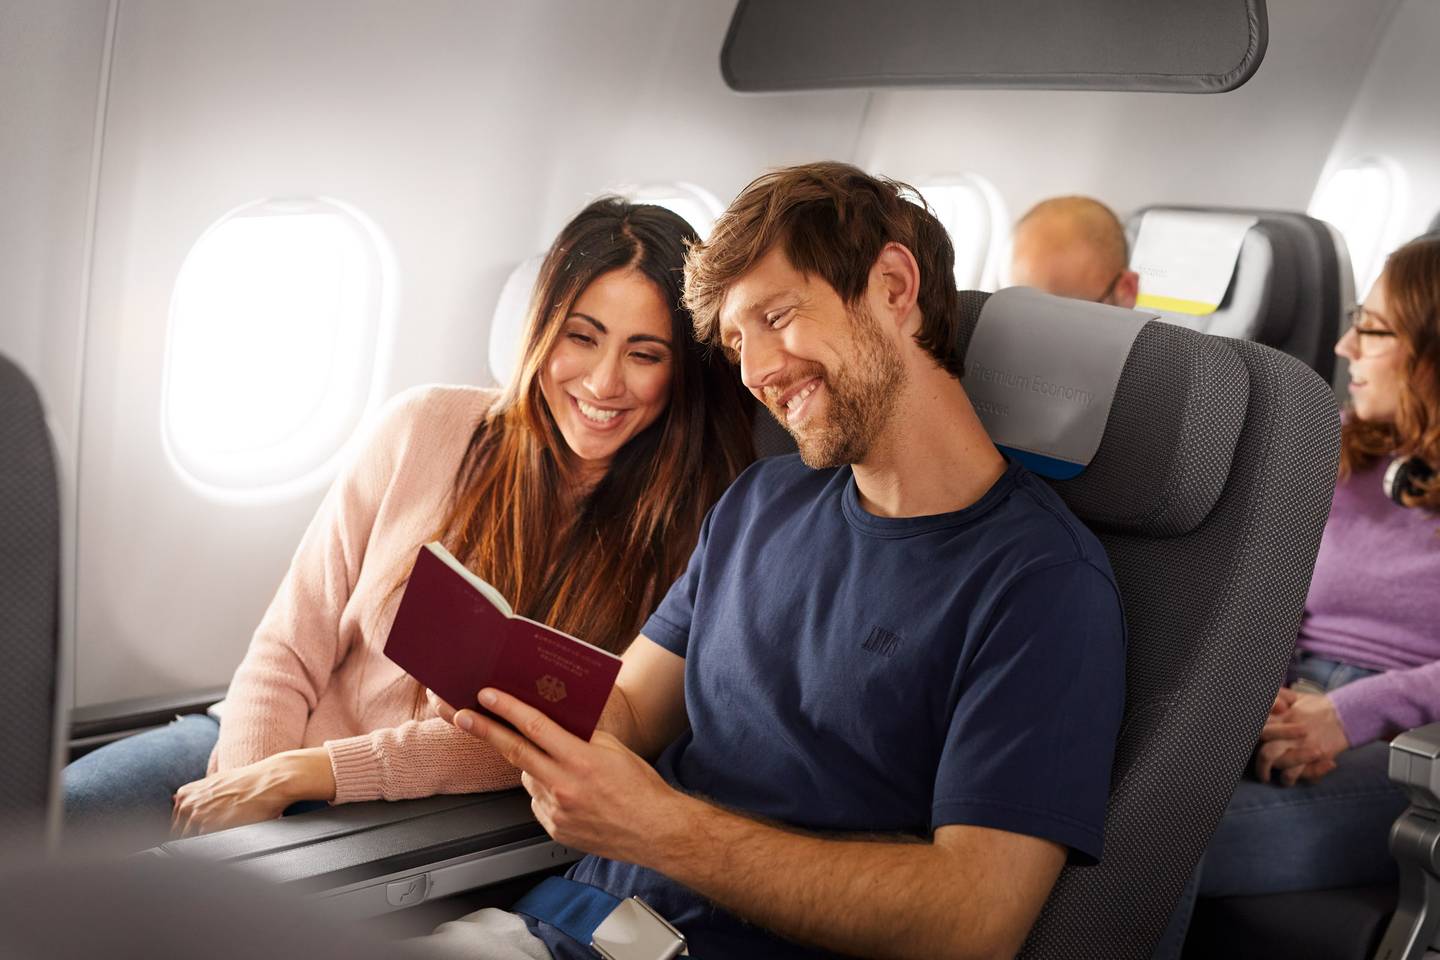 Mann und Frau sitzen in der Premium Economy Class und schauen auf ein Reisepass